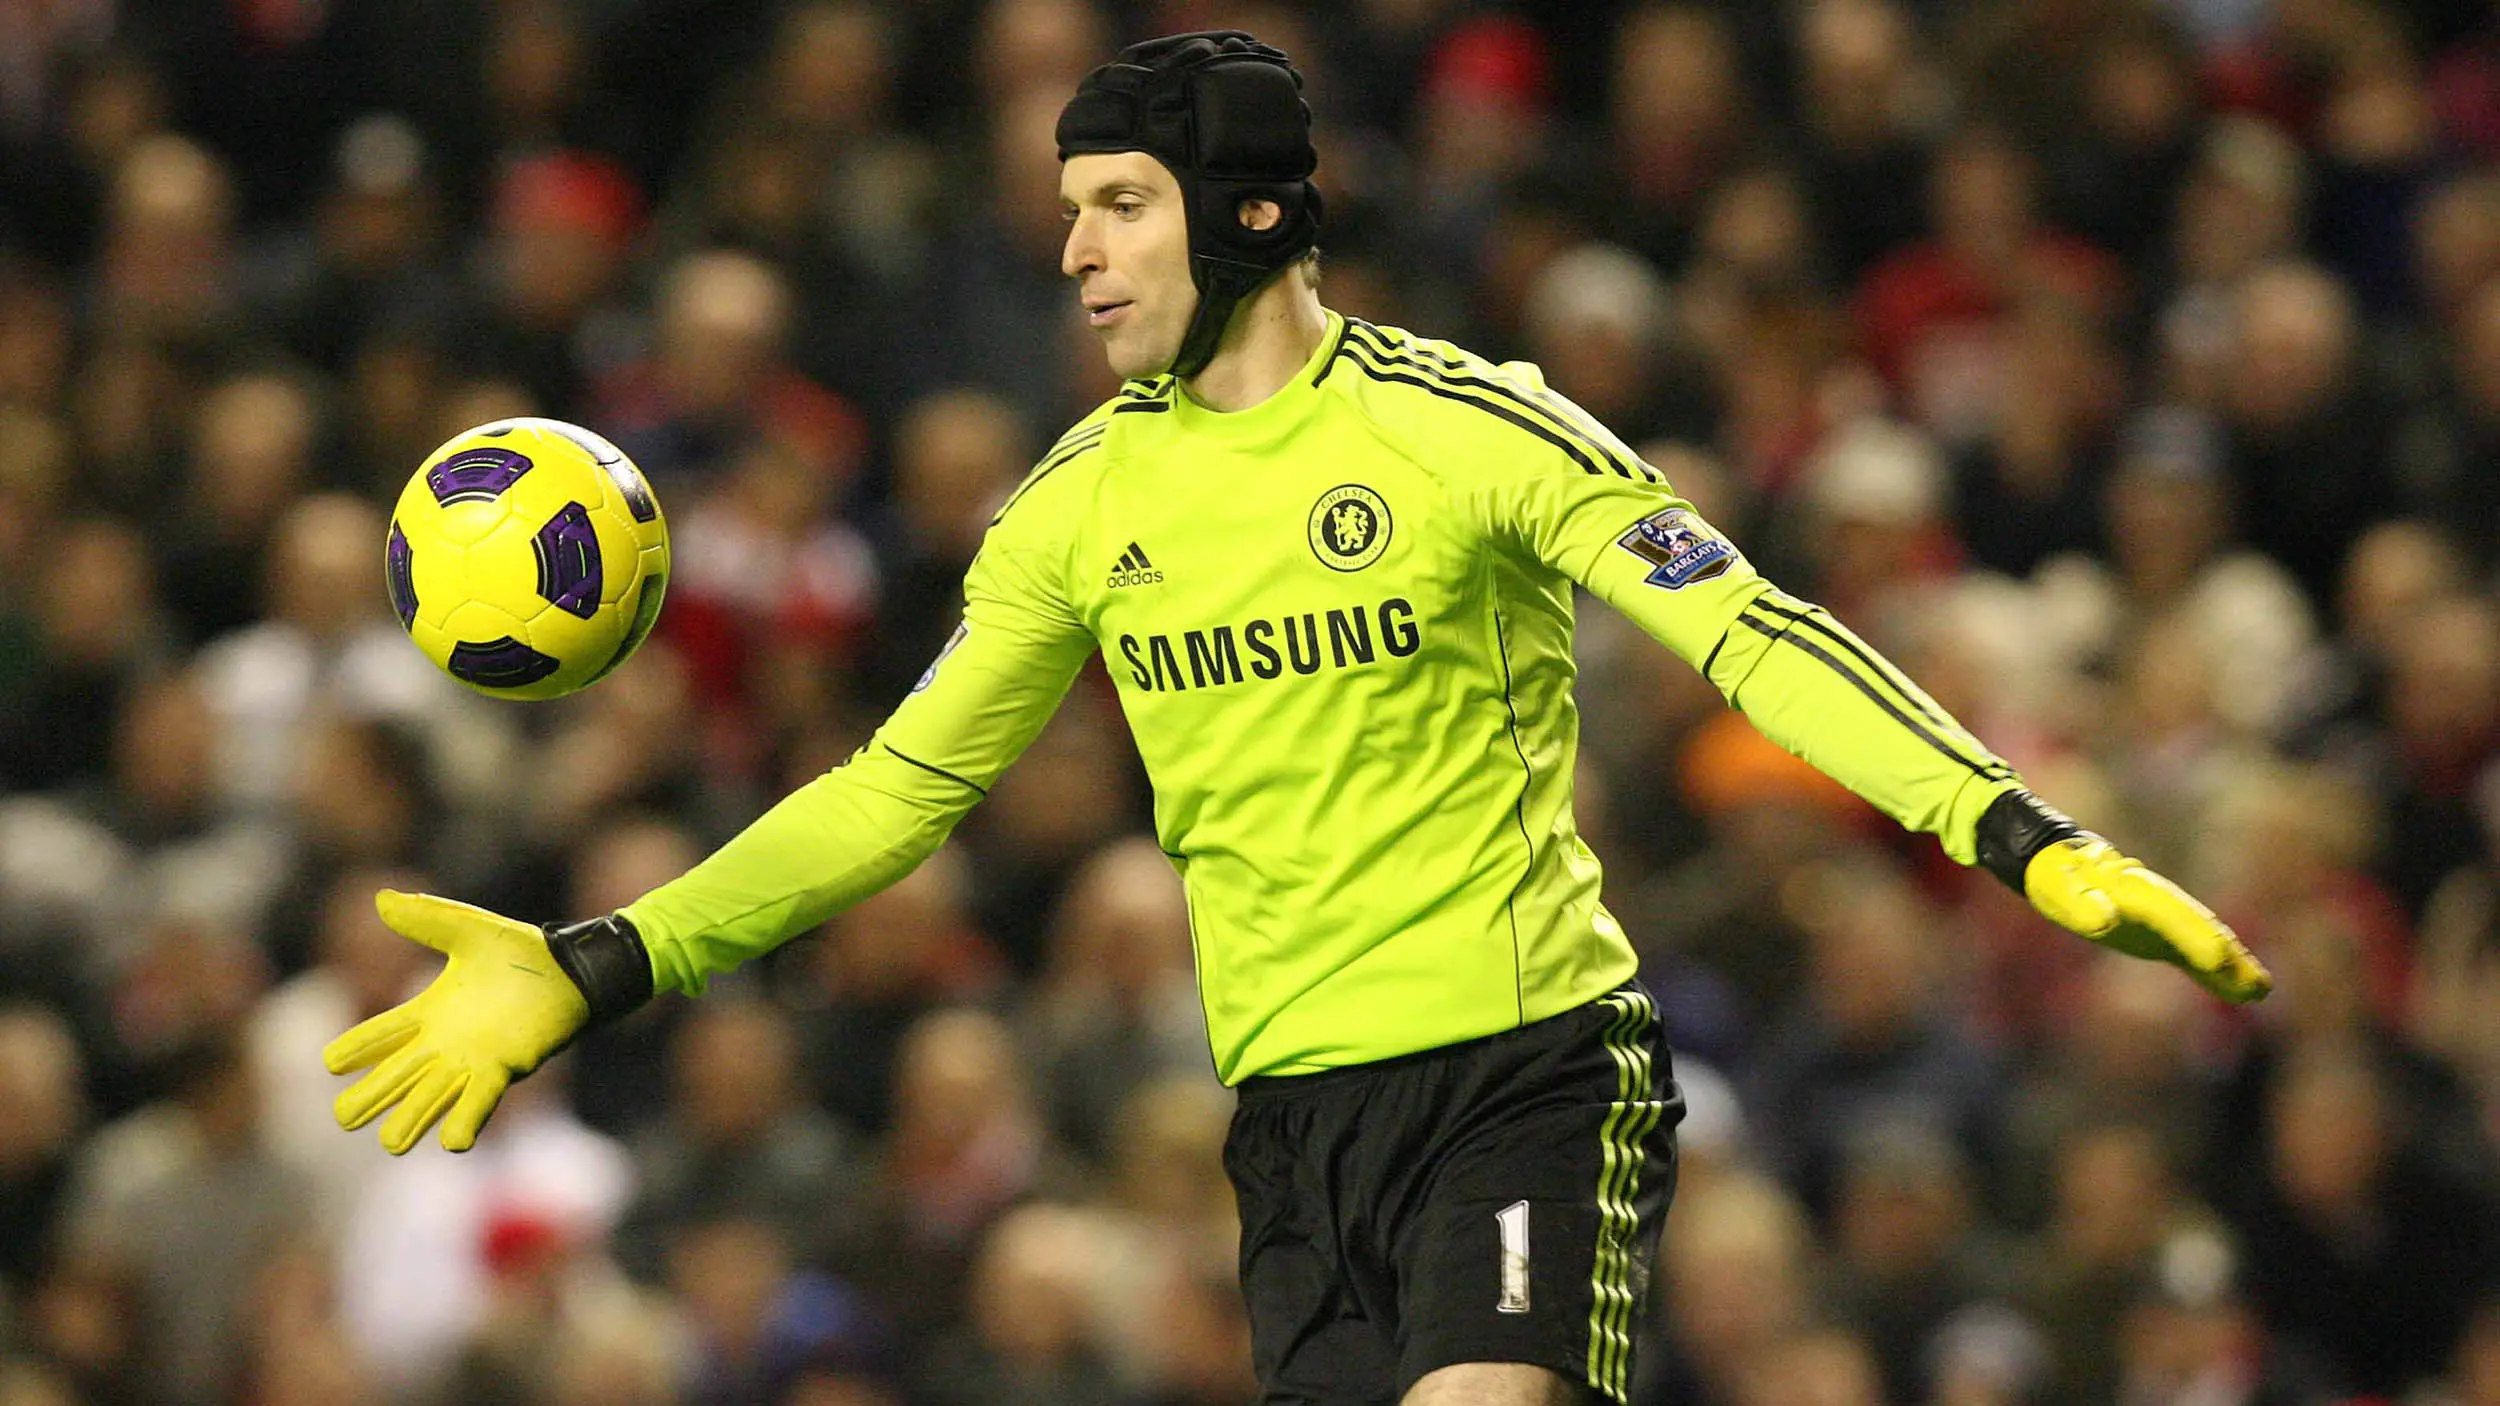 Petr Cech diboyong Chelsea saat berusia 22 tahun dengan nilai transfer sembilan juta poundsterling. Selama 11 musim kiper asal Ceska itu menjadi andalan The Blues. (EPA/Lindsey Parnaby)